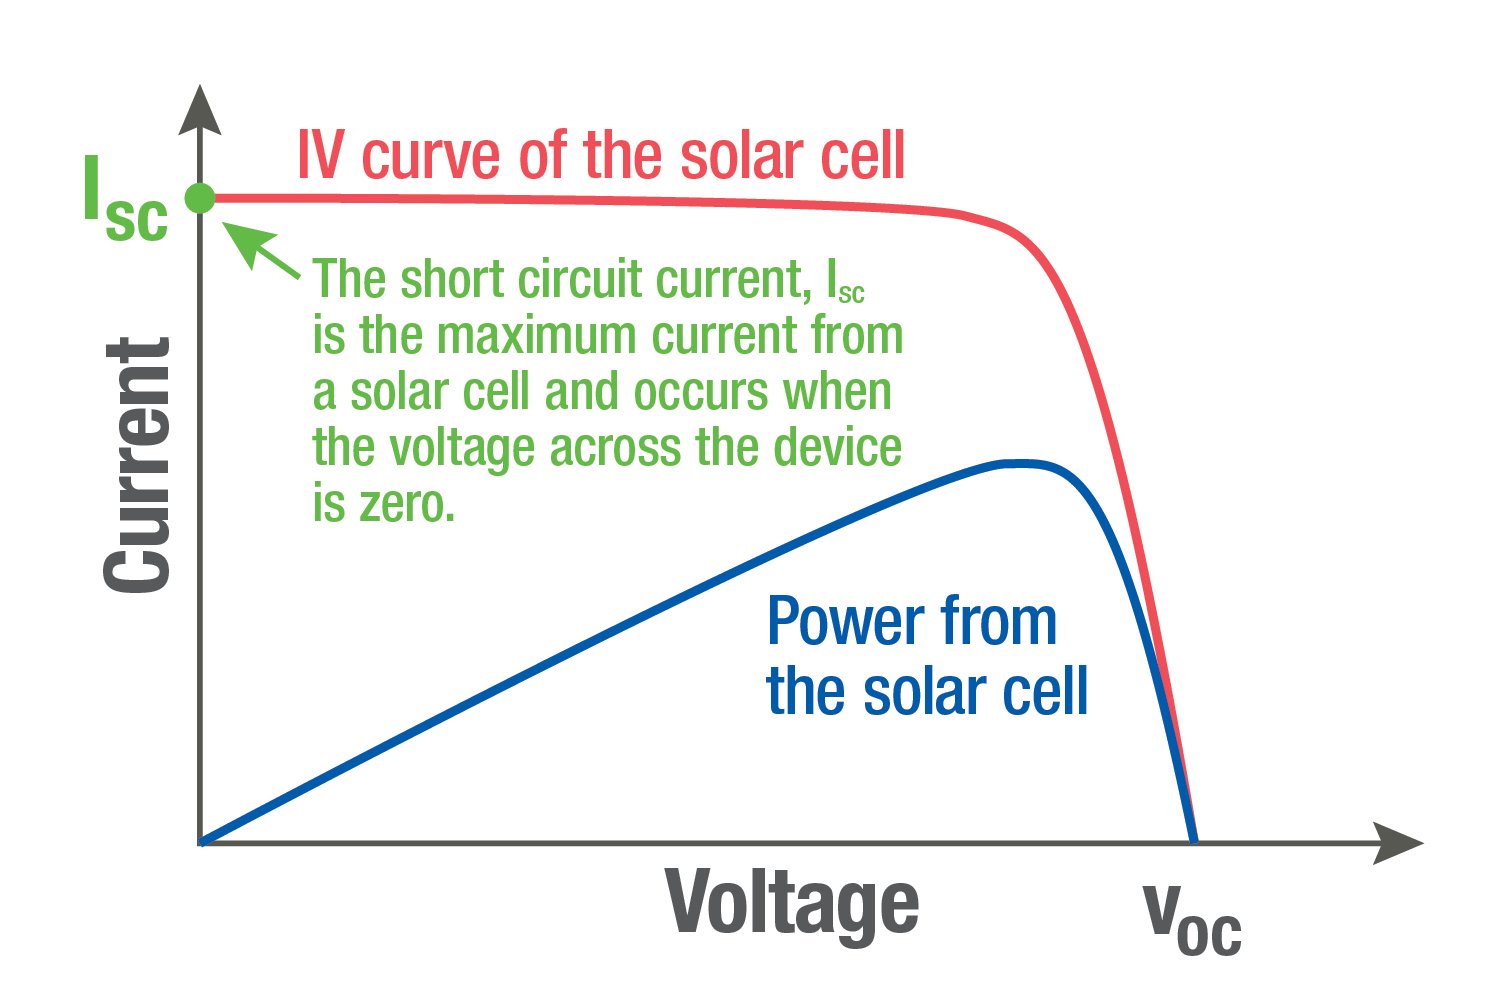 Graf porovnávající křivku IV solárního článku s jeho výstupním výkonem.